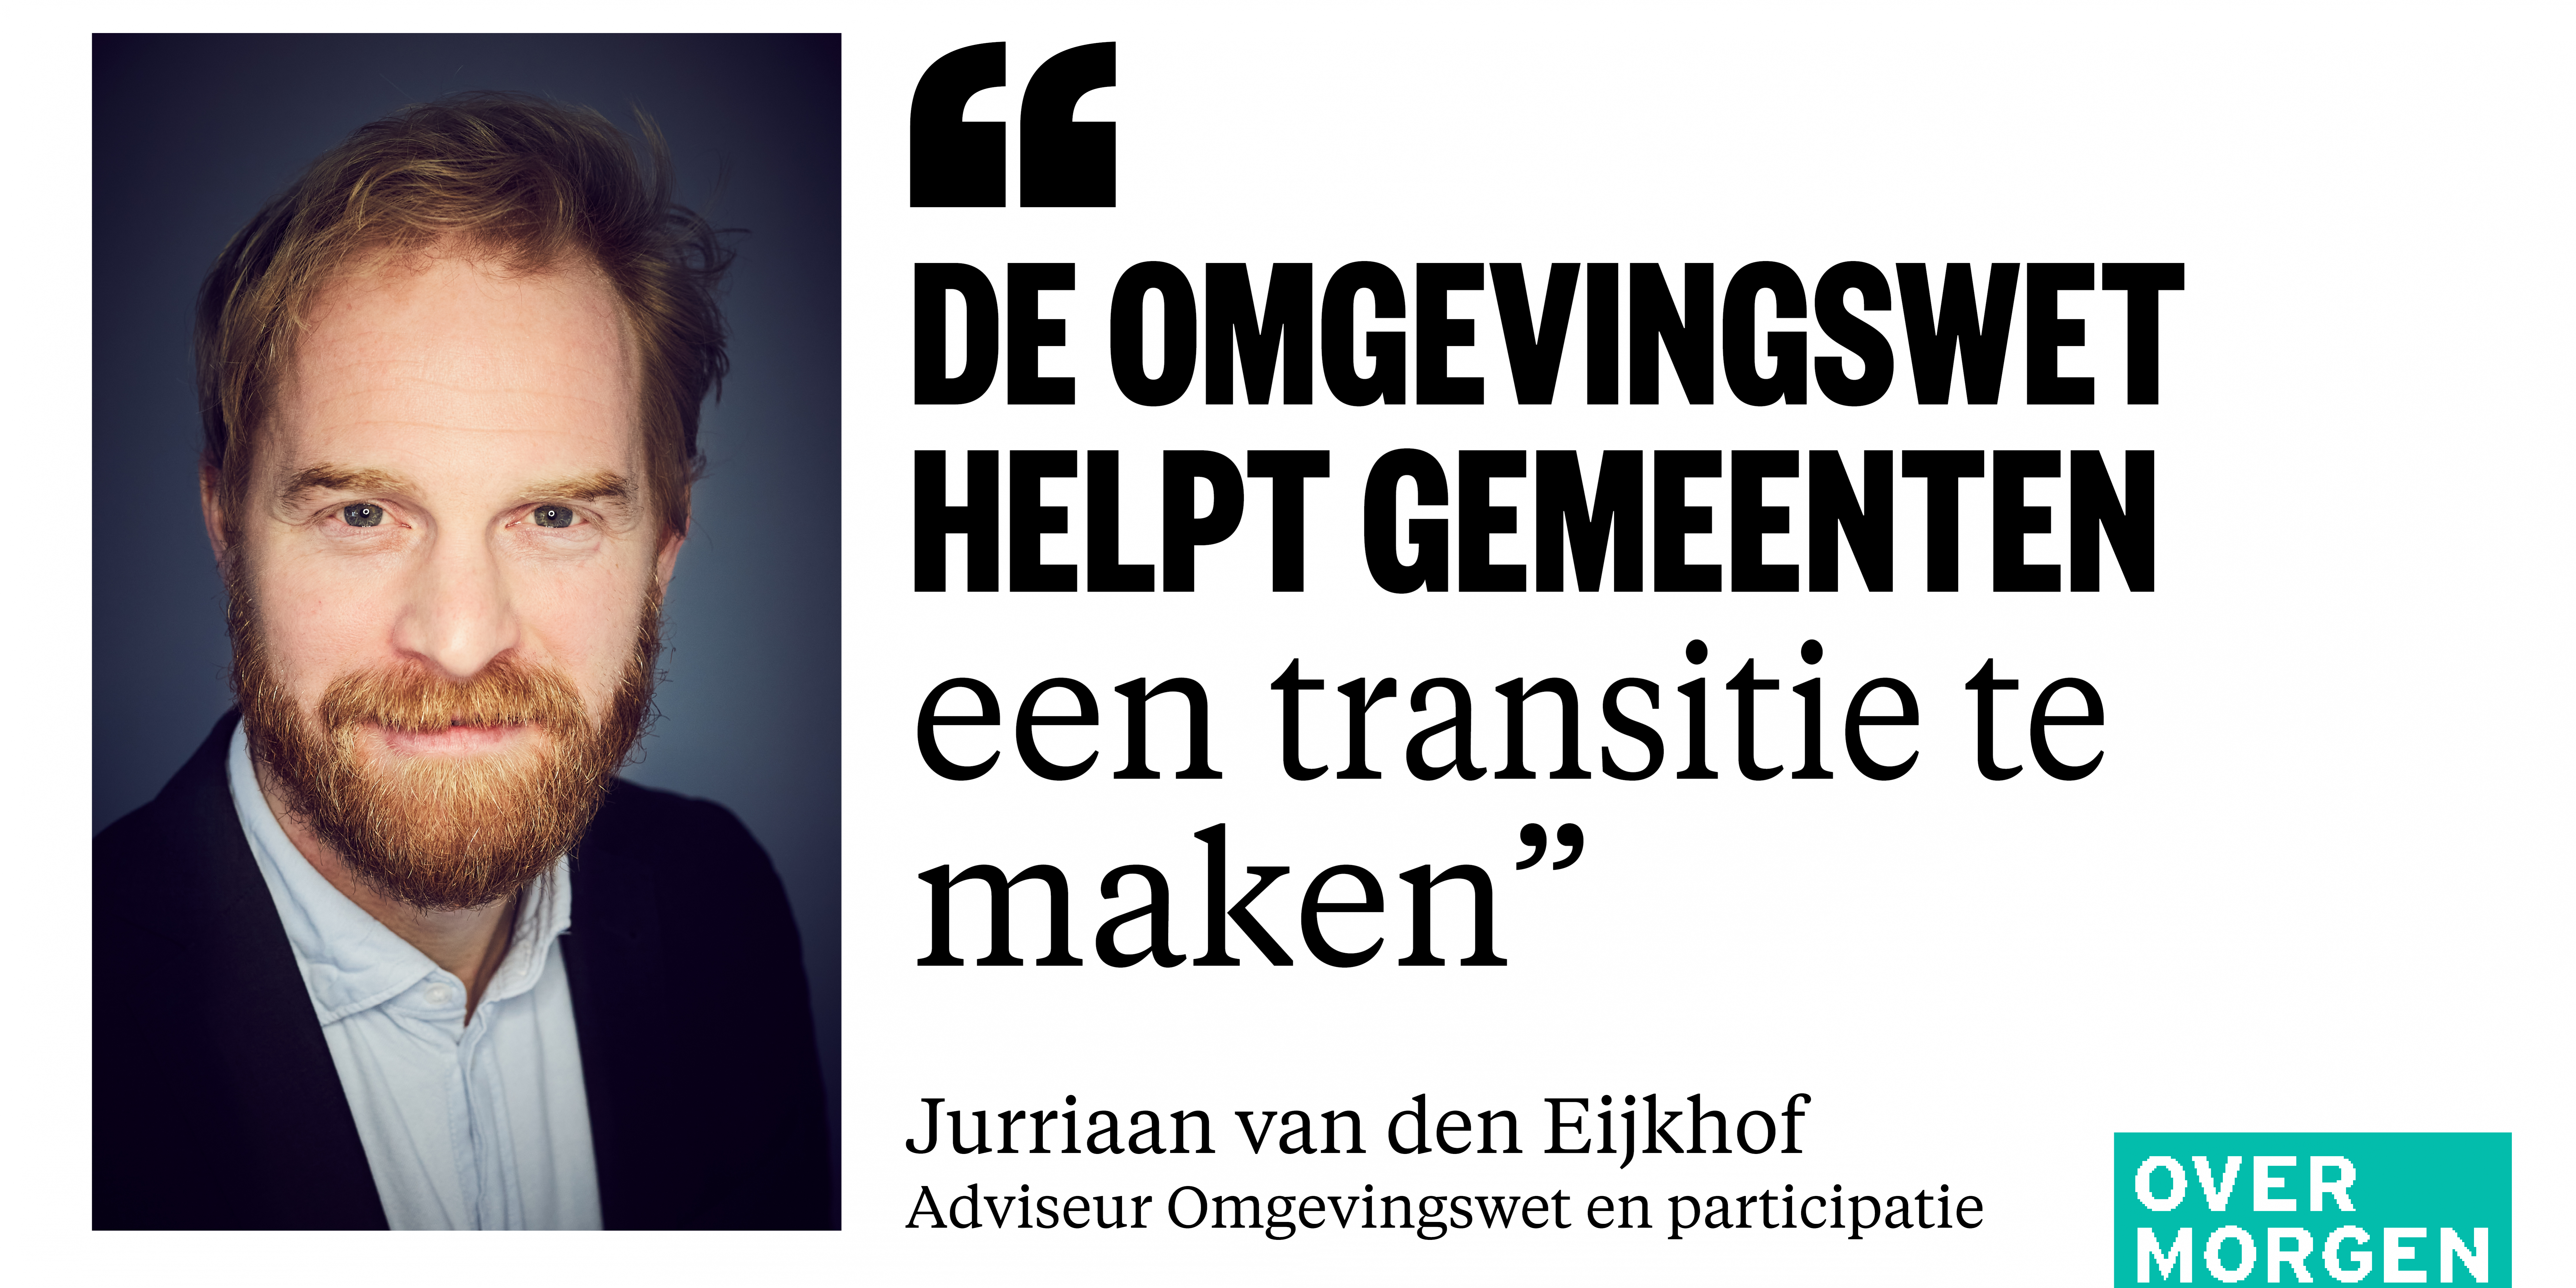 Jurriaan van den Eijkhof Over Morgen